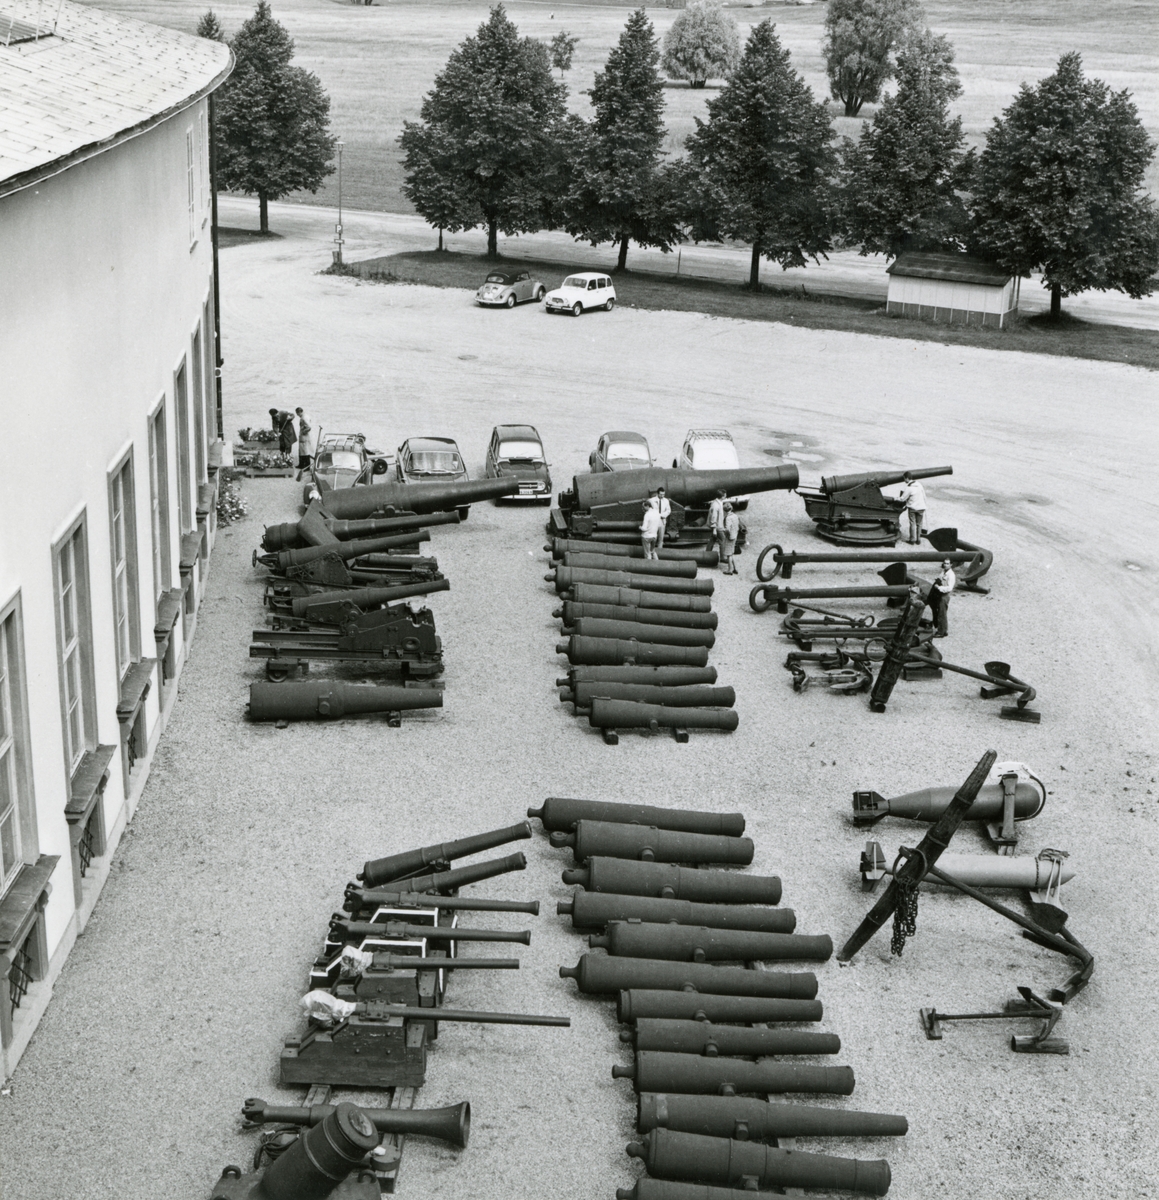 Utställning vid kanongården utanför Sjöhistoriska museets baksida. Kanoner, torpeder, ankare samt parkerade bilar.